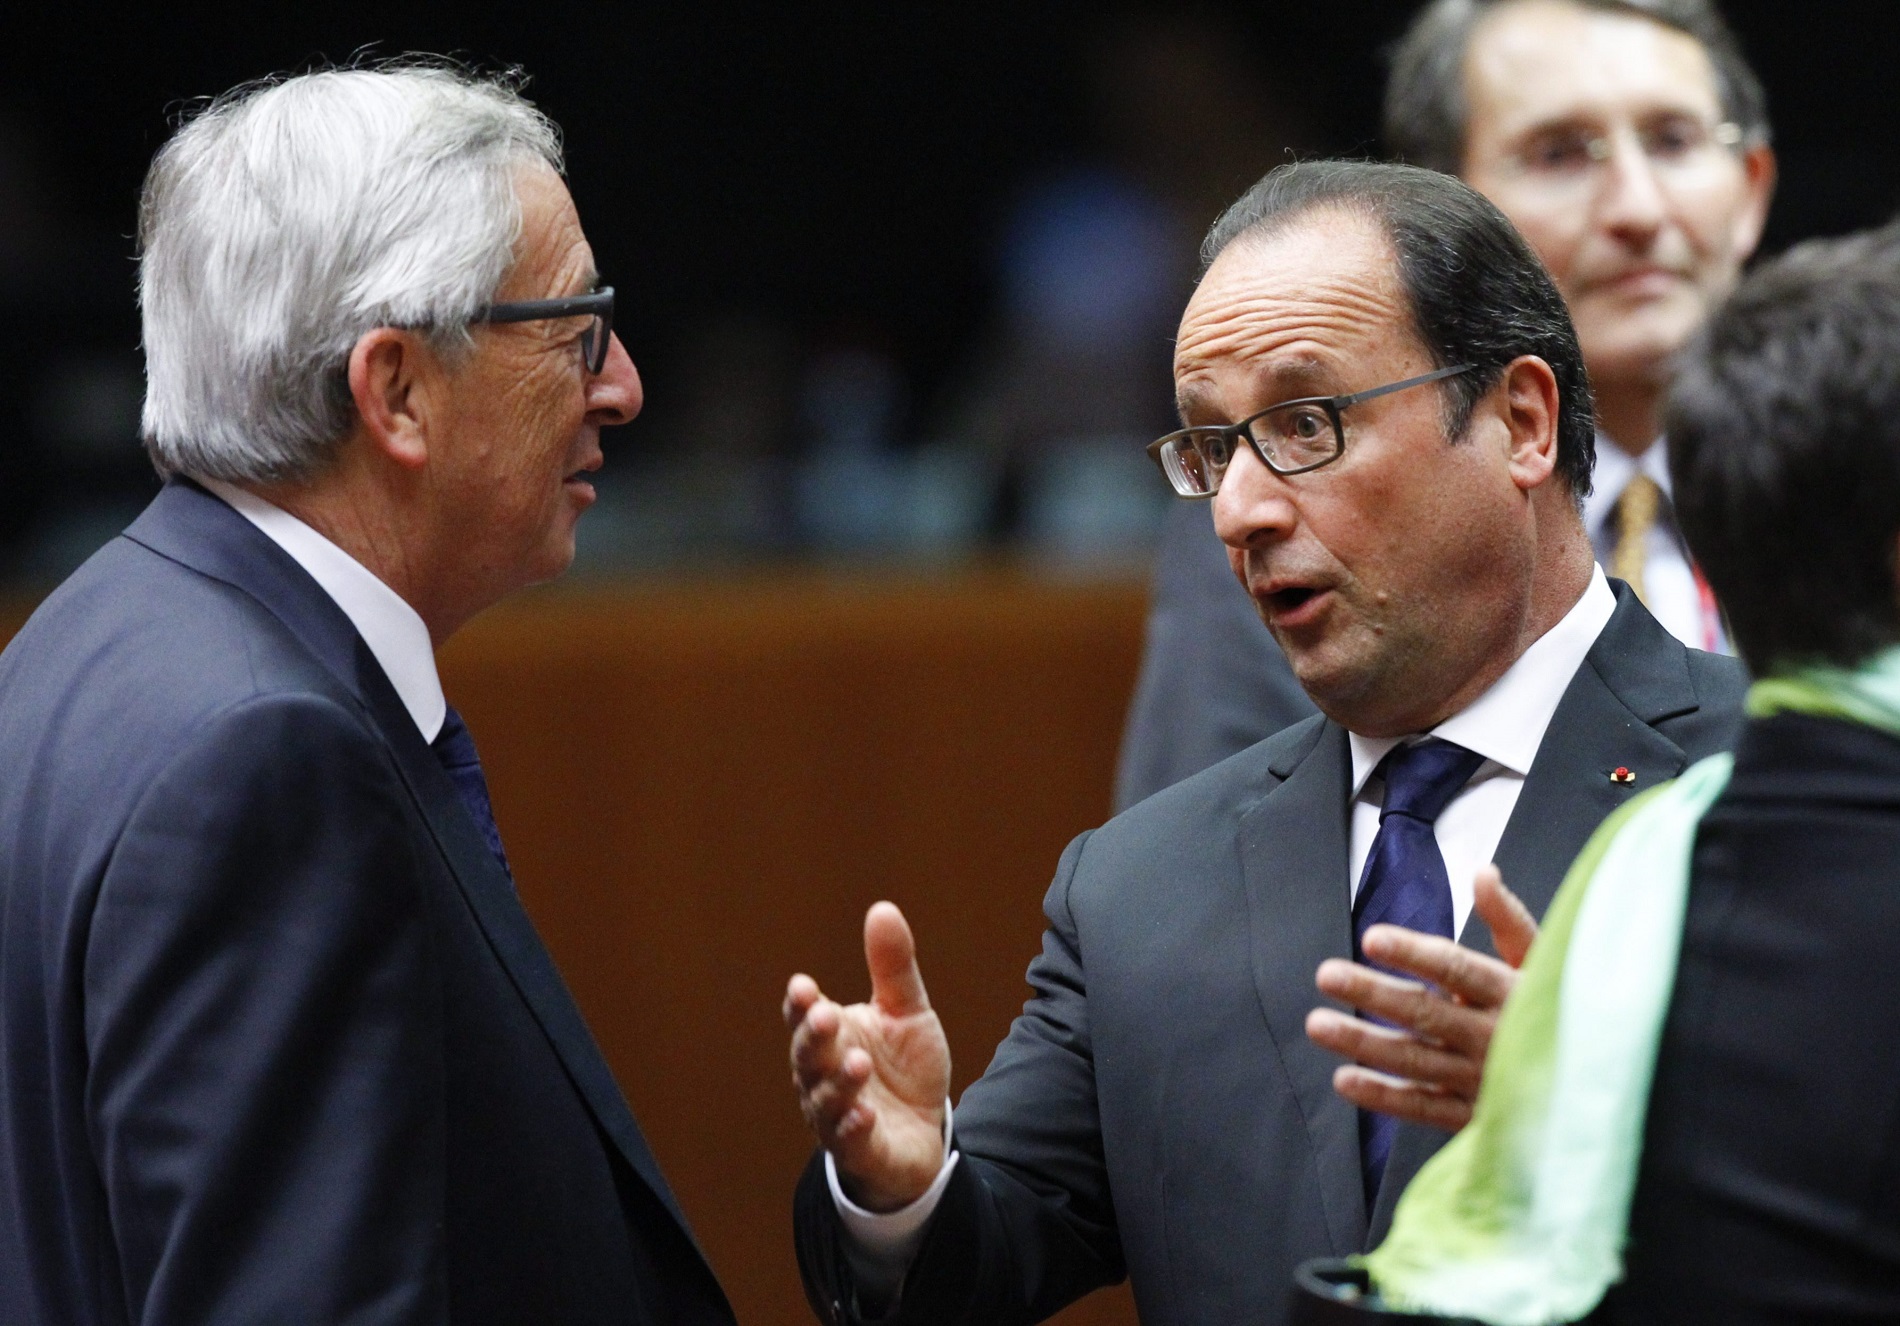 Brüsszel, 2015. szeptember 23. Jean-Claude Juncker, az Európai Bizottság elnöke (b) és Francois Hollande francia elnök beszélget az uniós tagállamok állam- és kormányfõinek a migránsválság ügyében összehívott rendkívüli csúcstalálkozóján Brüsszelben 2015. szeptember 23-án. (MTI/EPA/Olivier Hoslet)